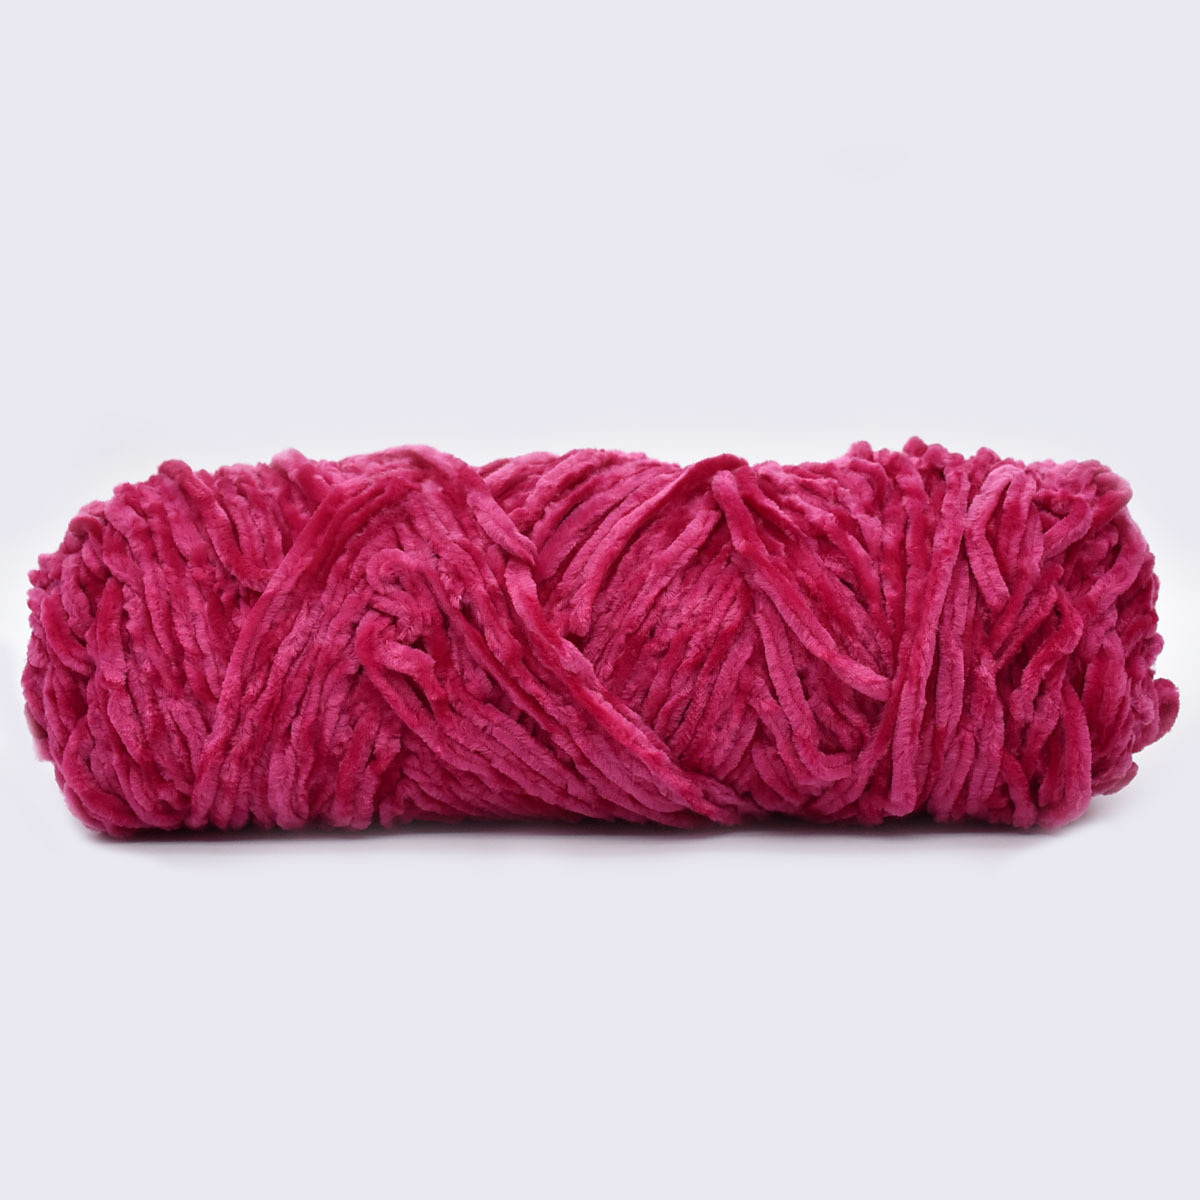 1 hilo de felpilla suave, hilo de terciopelo para tejer, hilo para tejer,  hilo para ganchillo, para suéter, sombrero, mantas, manualidades (rojo rosa)